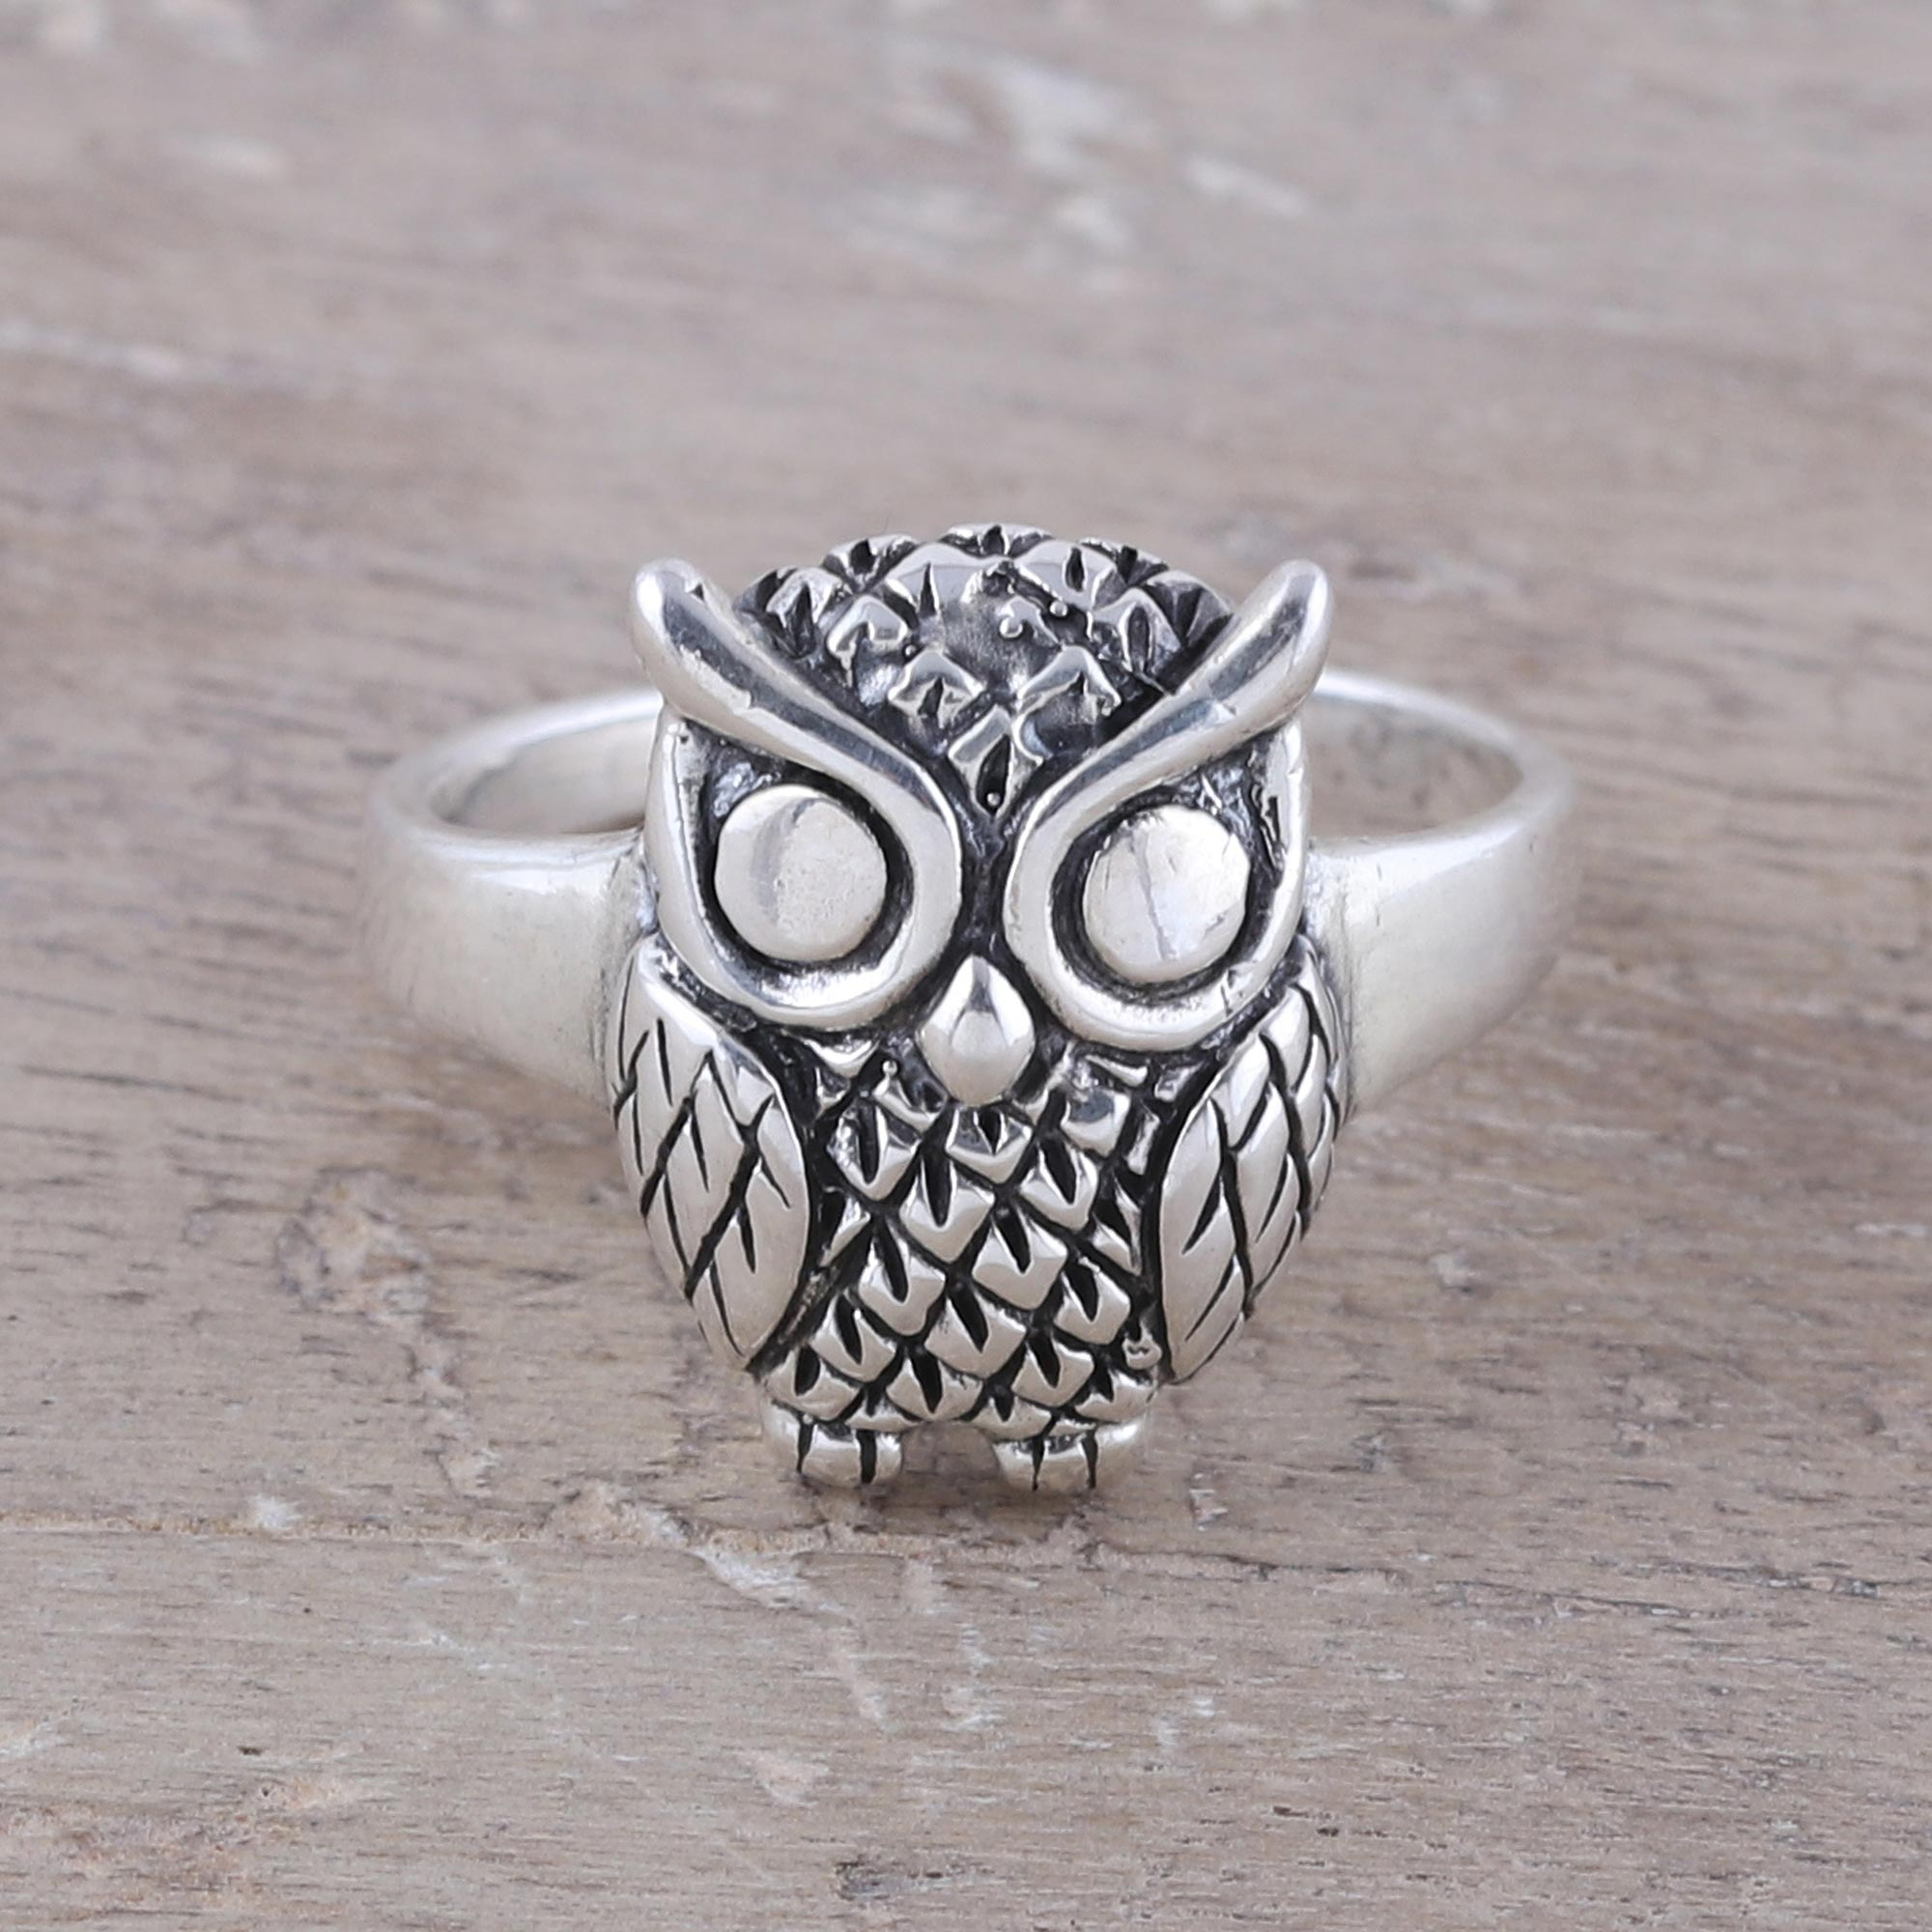 Antique Stainless Steel Owl Shape Finger Ring Online